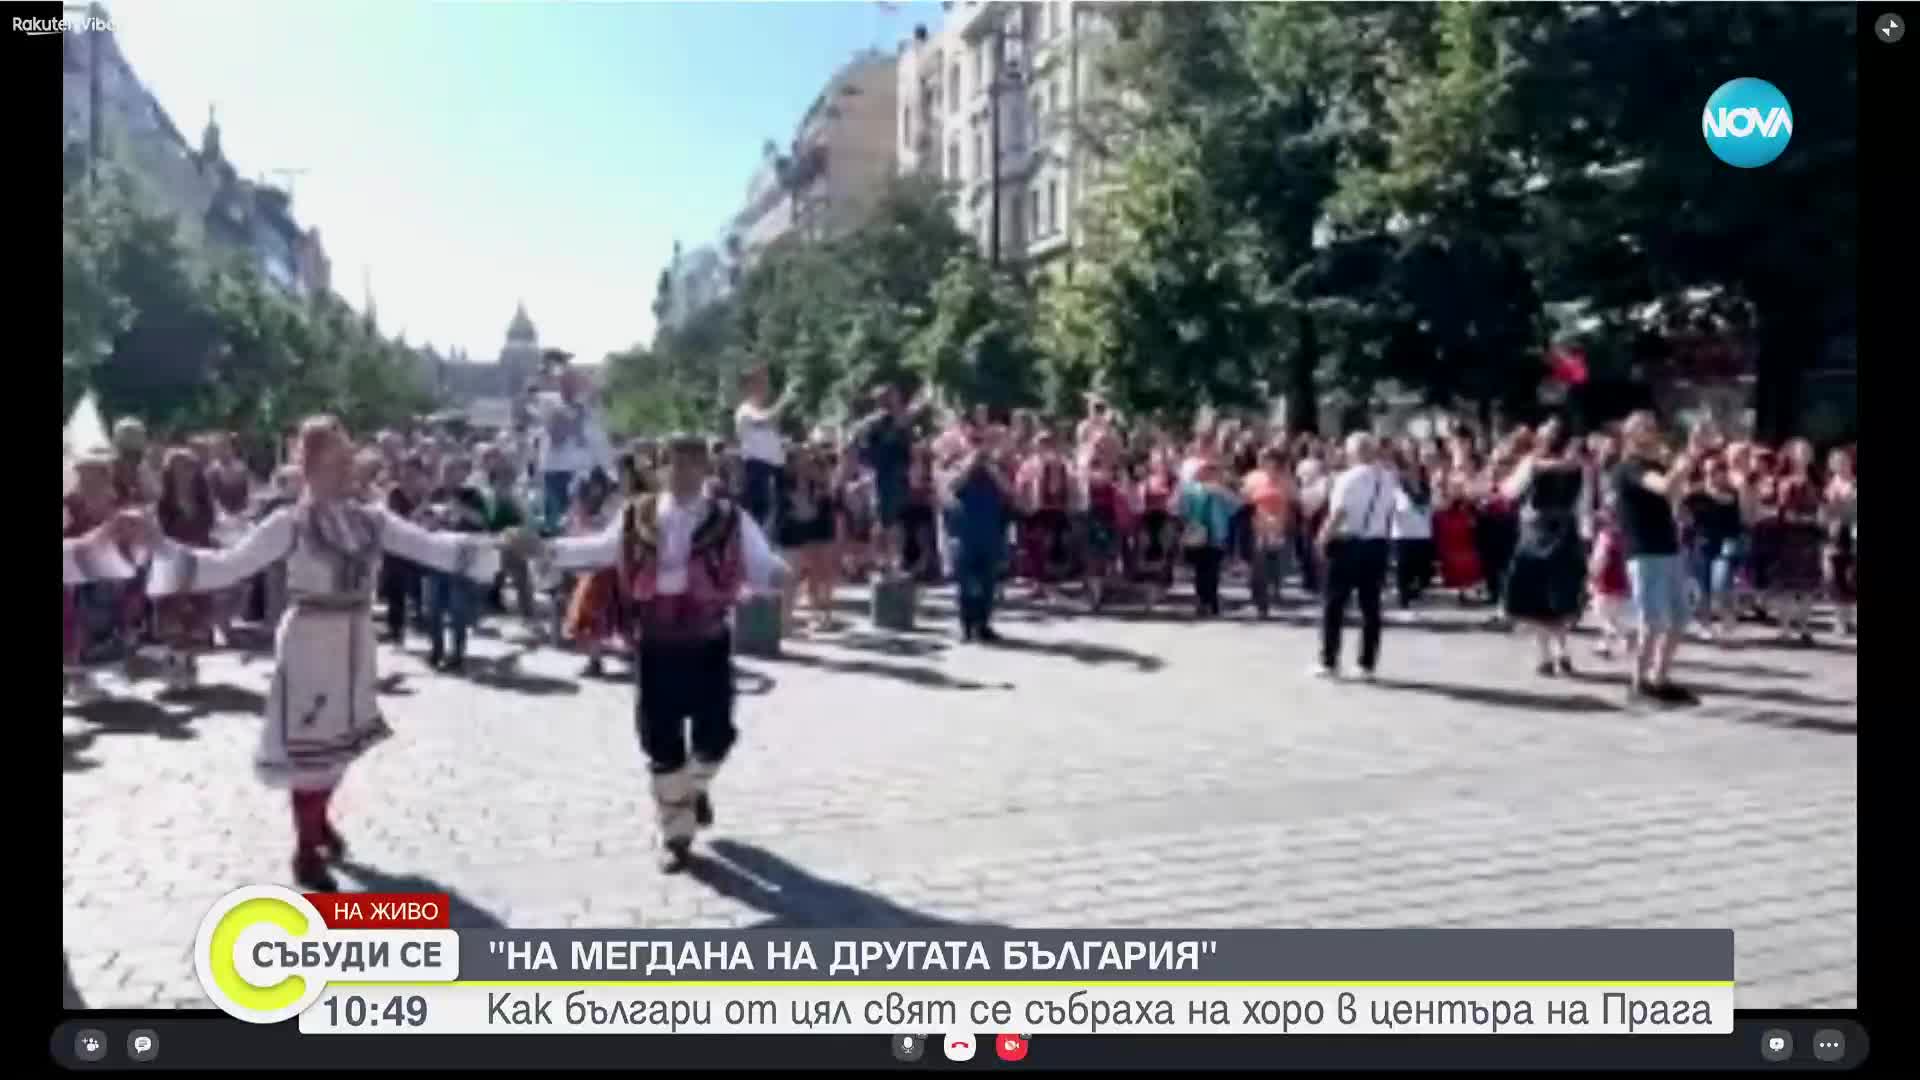 Българи от цял свят се събраха на събора "На мегдана на другата България" в Прага